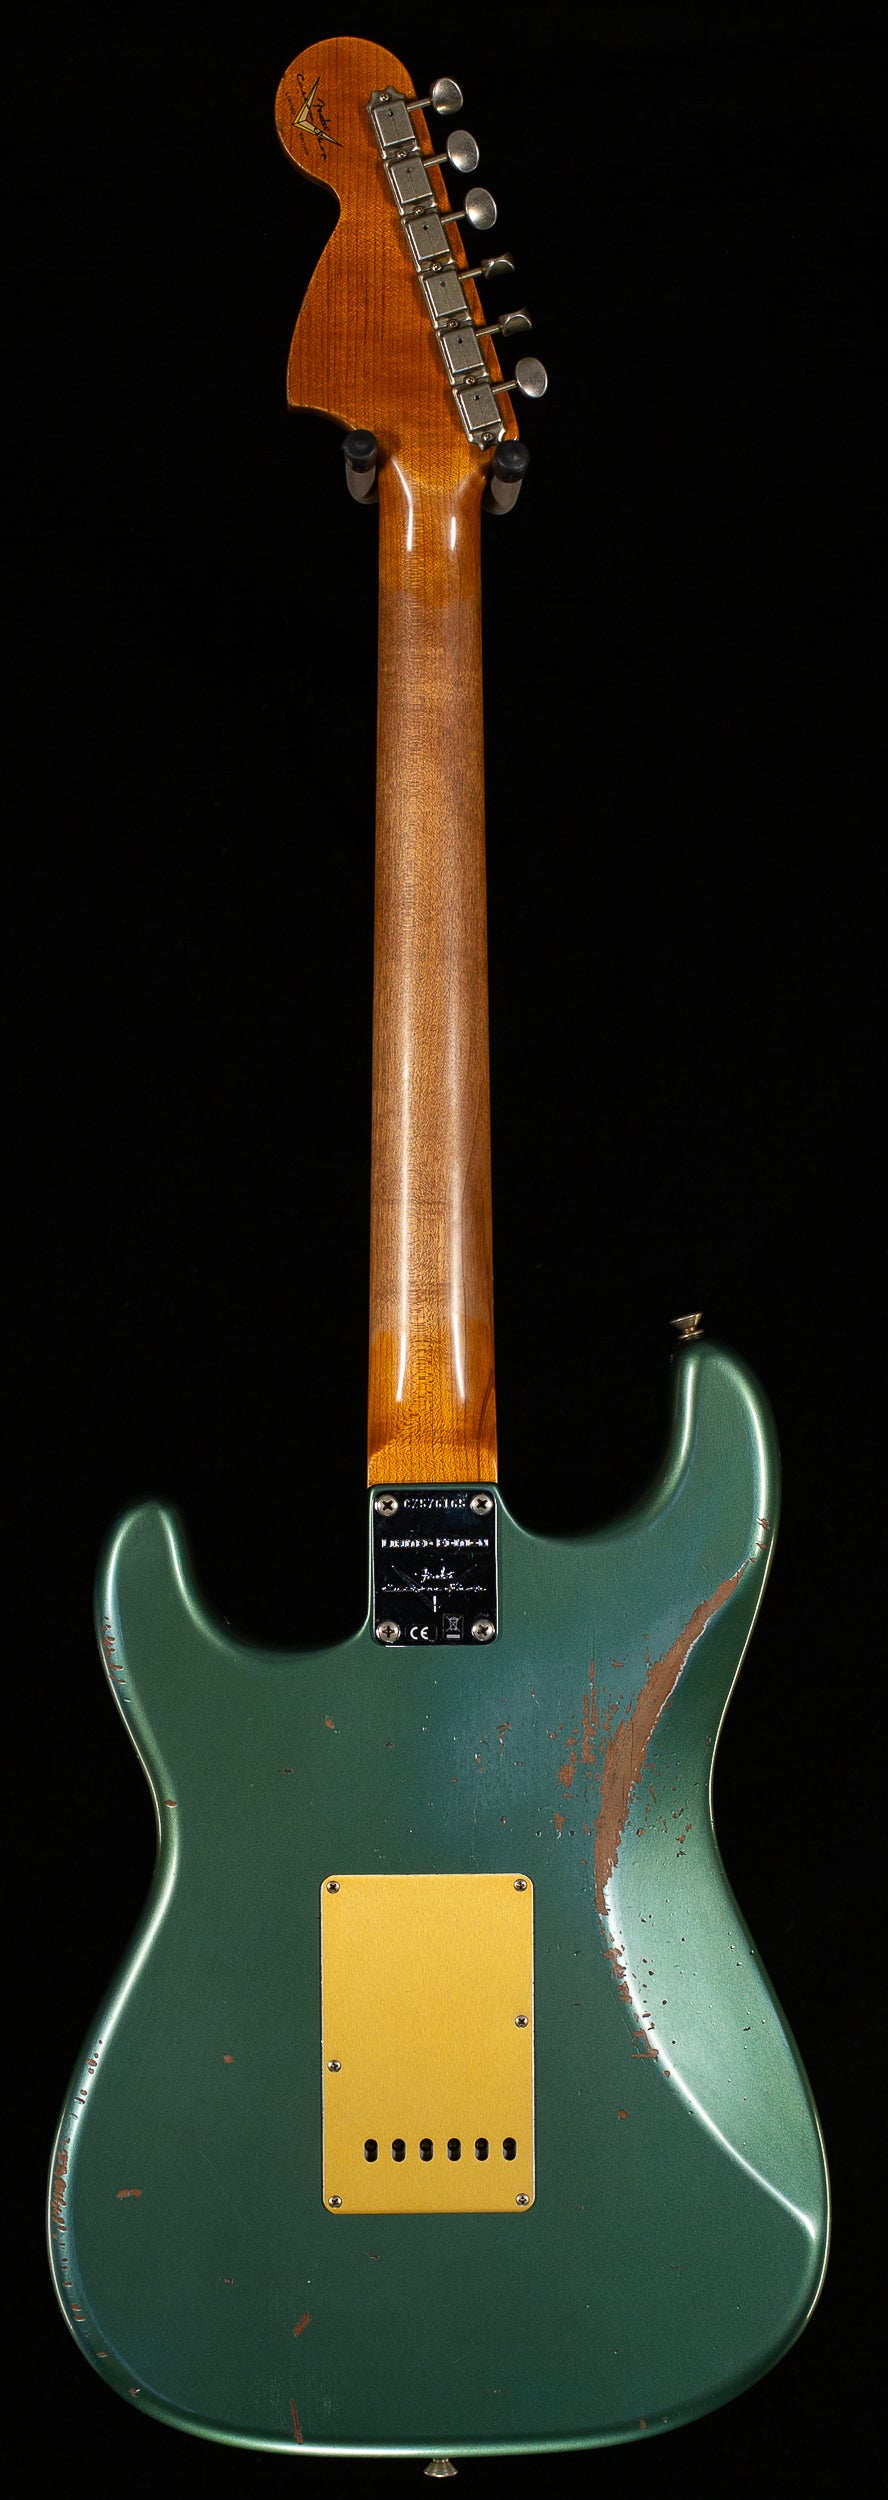 Fender Custom Shop LTD Roasted BIGHEAD STRAT Relic - Faded Aged 